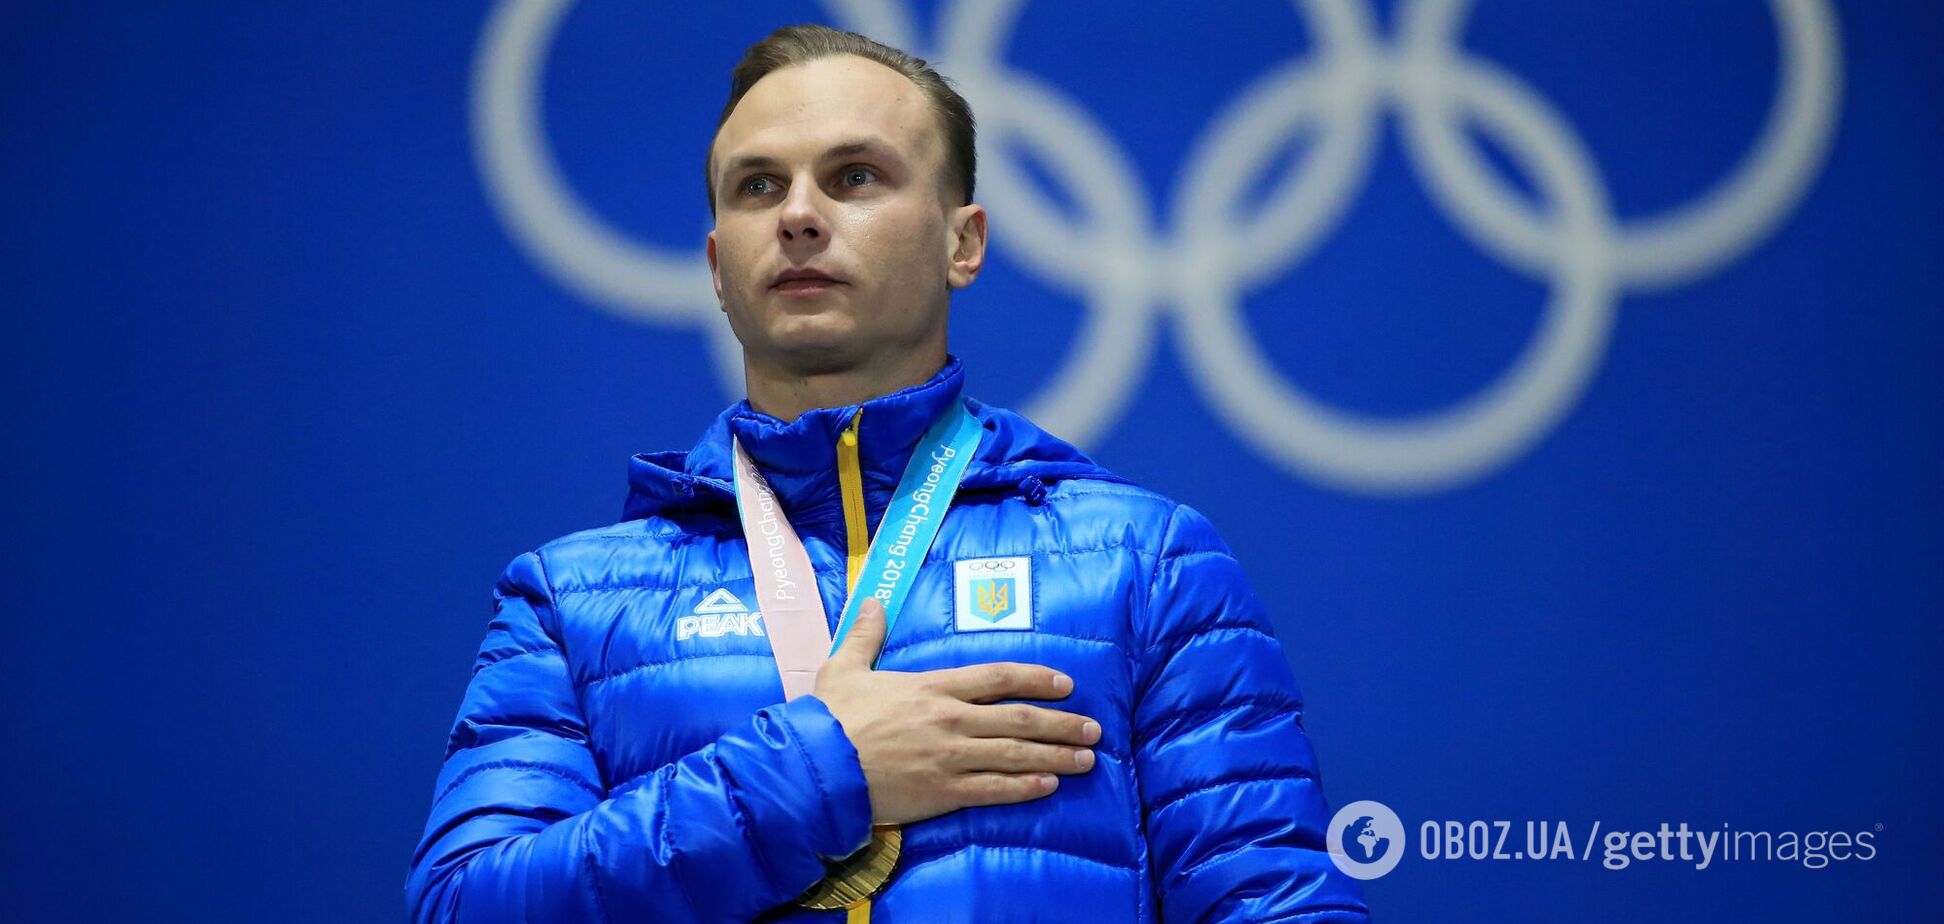 'Для меня неоднозначно, что Россия – агрессор': украинский олимпийский чемпион высказался об РФ